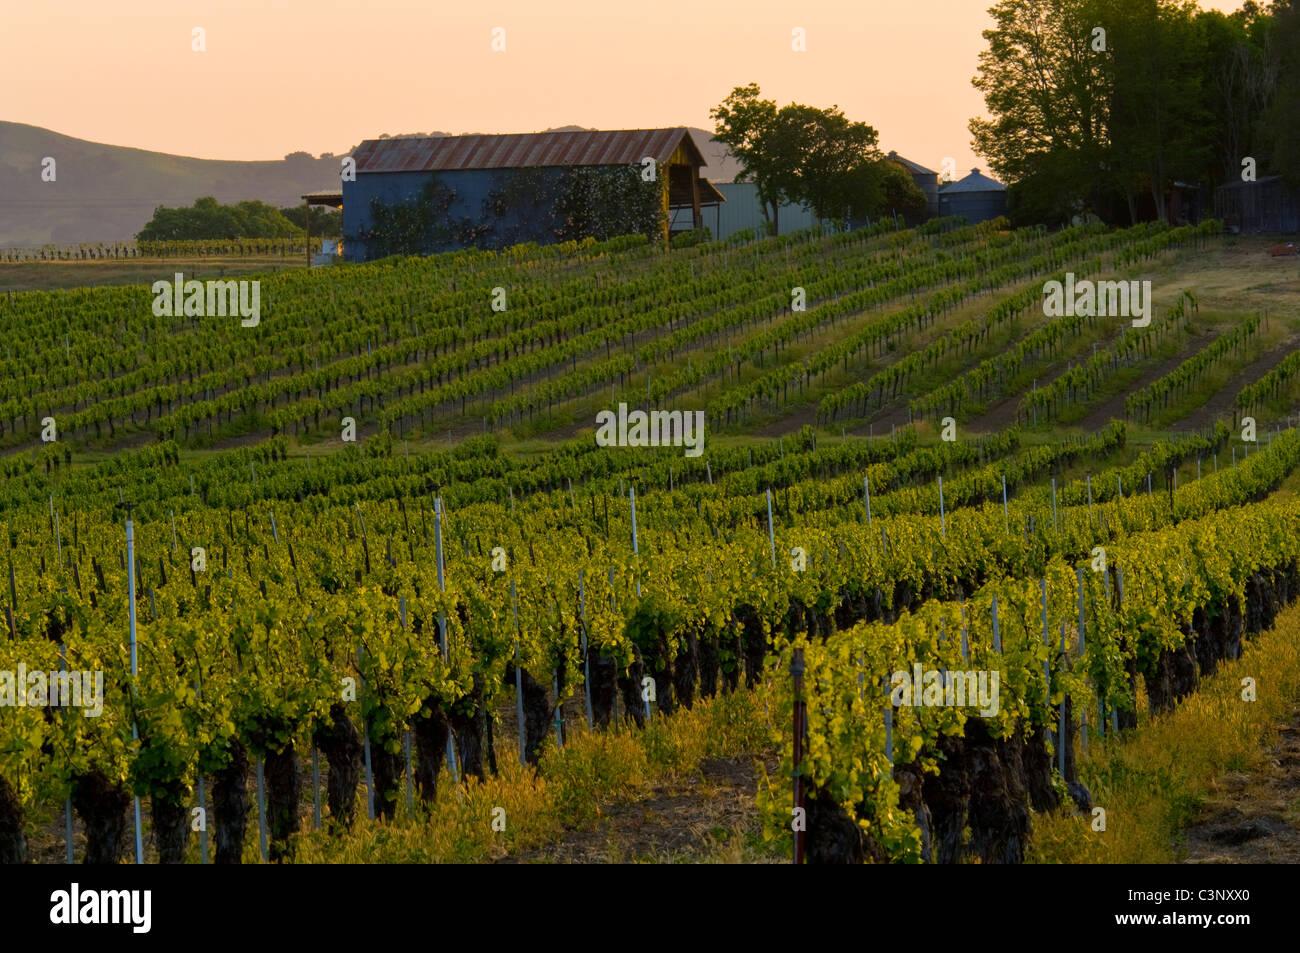 Vin de raisins dans les vignobles dans la vallée de Santa Ynez, comté de Santa Barbara, Californie Banque D'Images